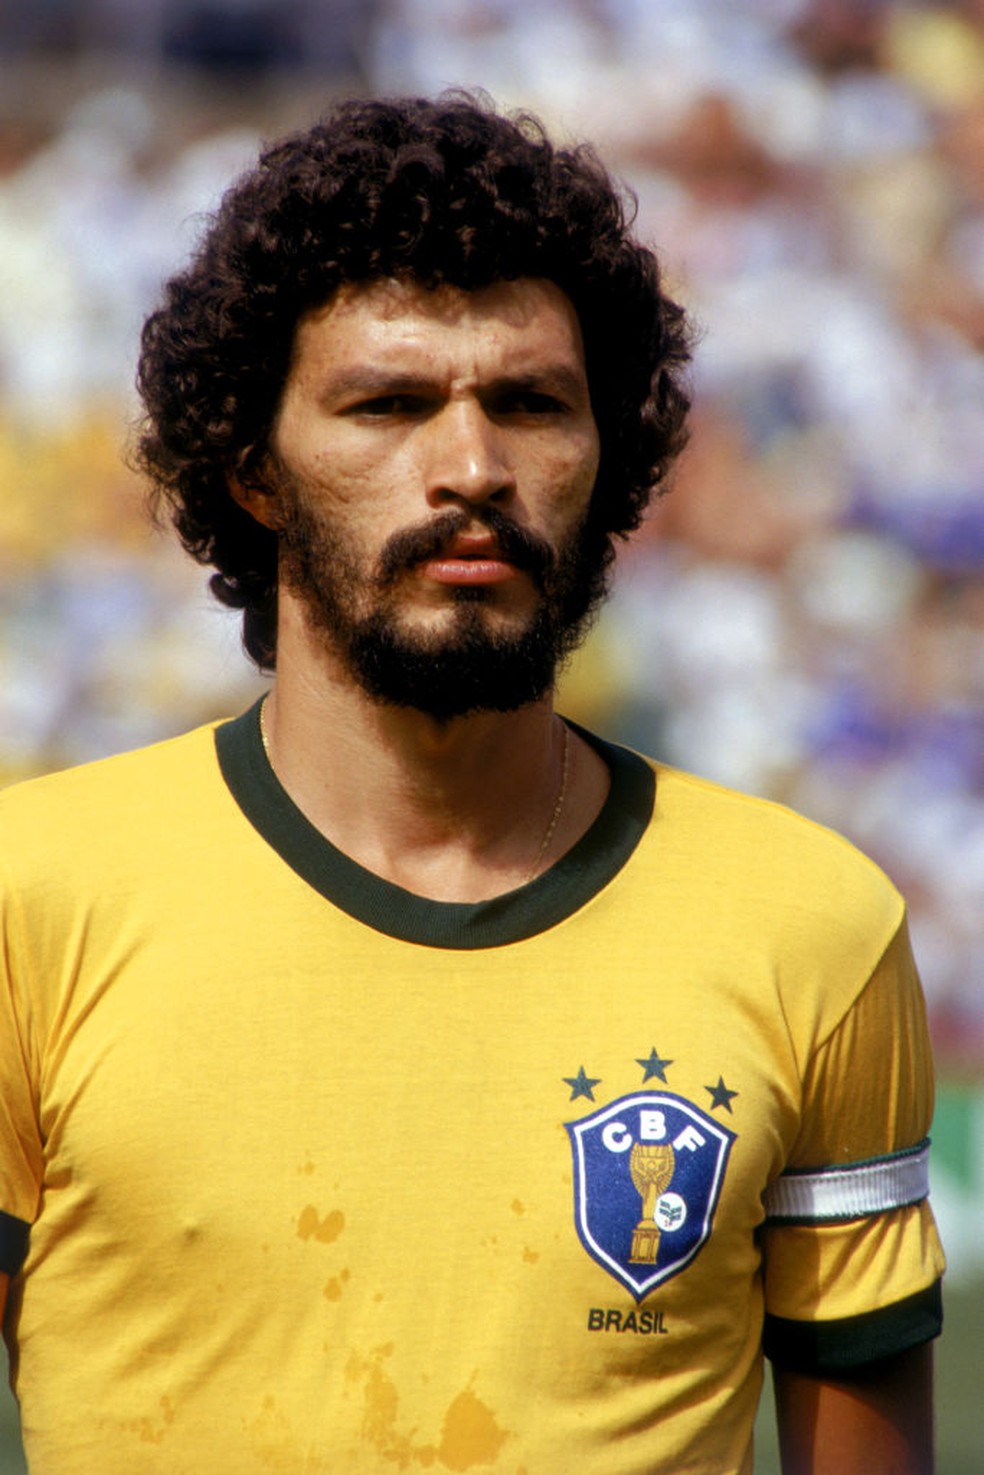 Osasquense é nomeada técnica da Seleção Brasileira de Paracanoagem